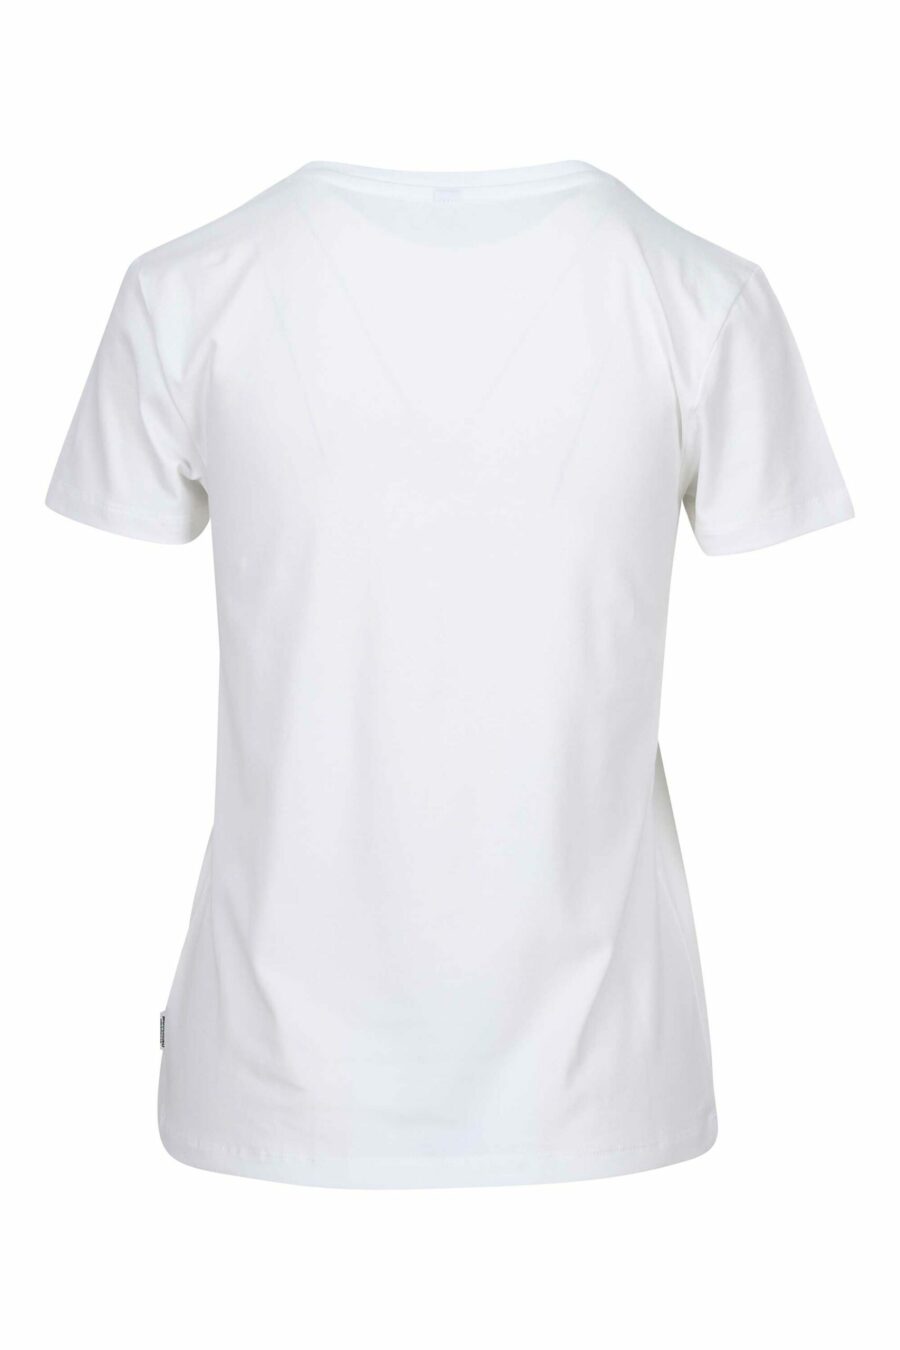 Camiseta blanca con logo parche oso "underbear" - 889316618488 1 scaled